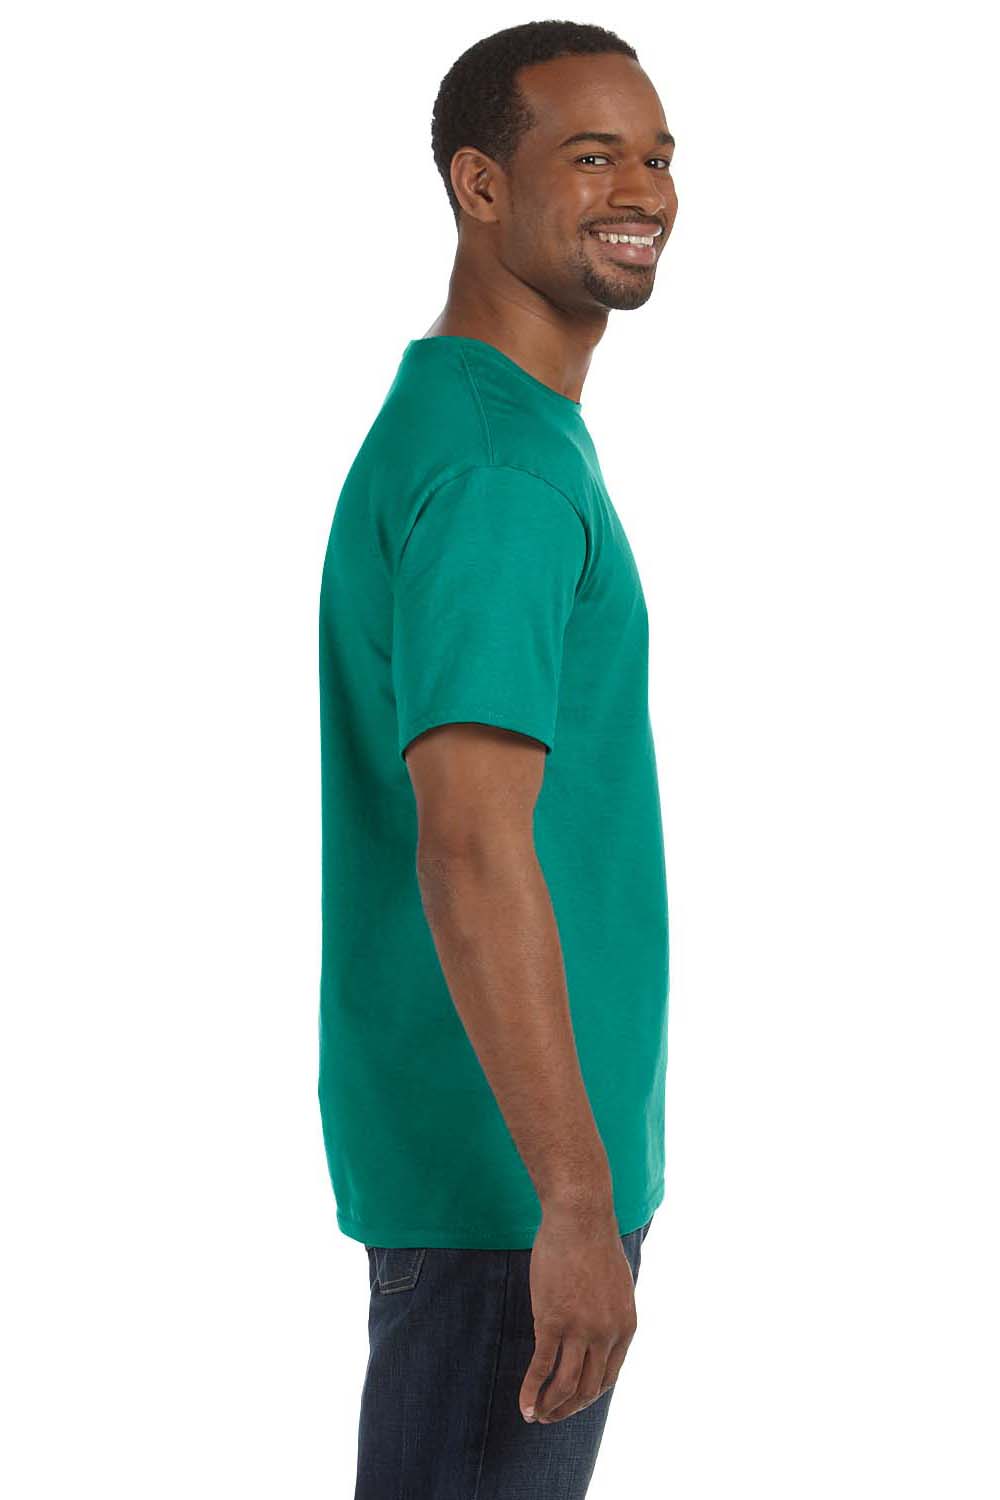 Jerzees 29M Mens Dri-Power Moisture Wicking Short Sleeve Crewneck T-Shirt Jade Green Side